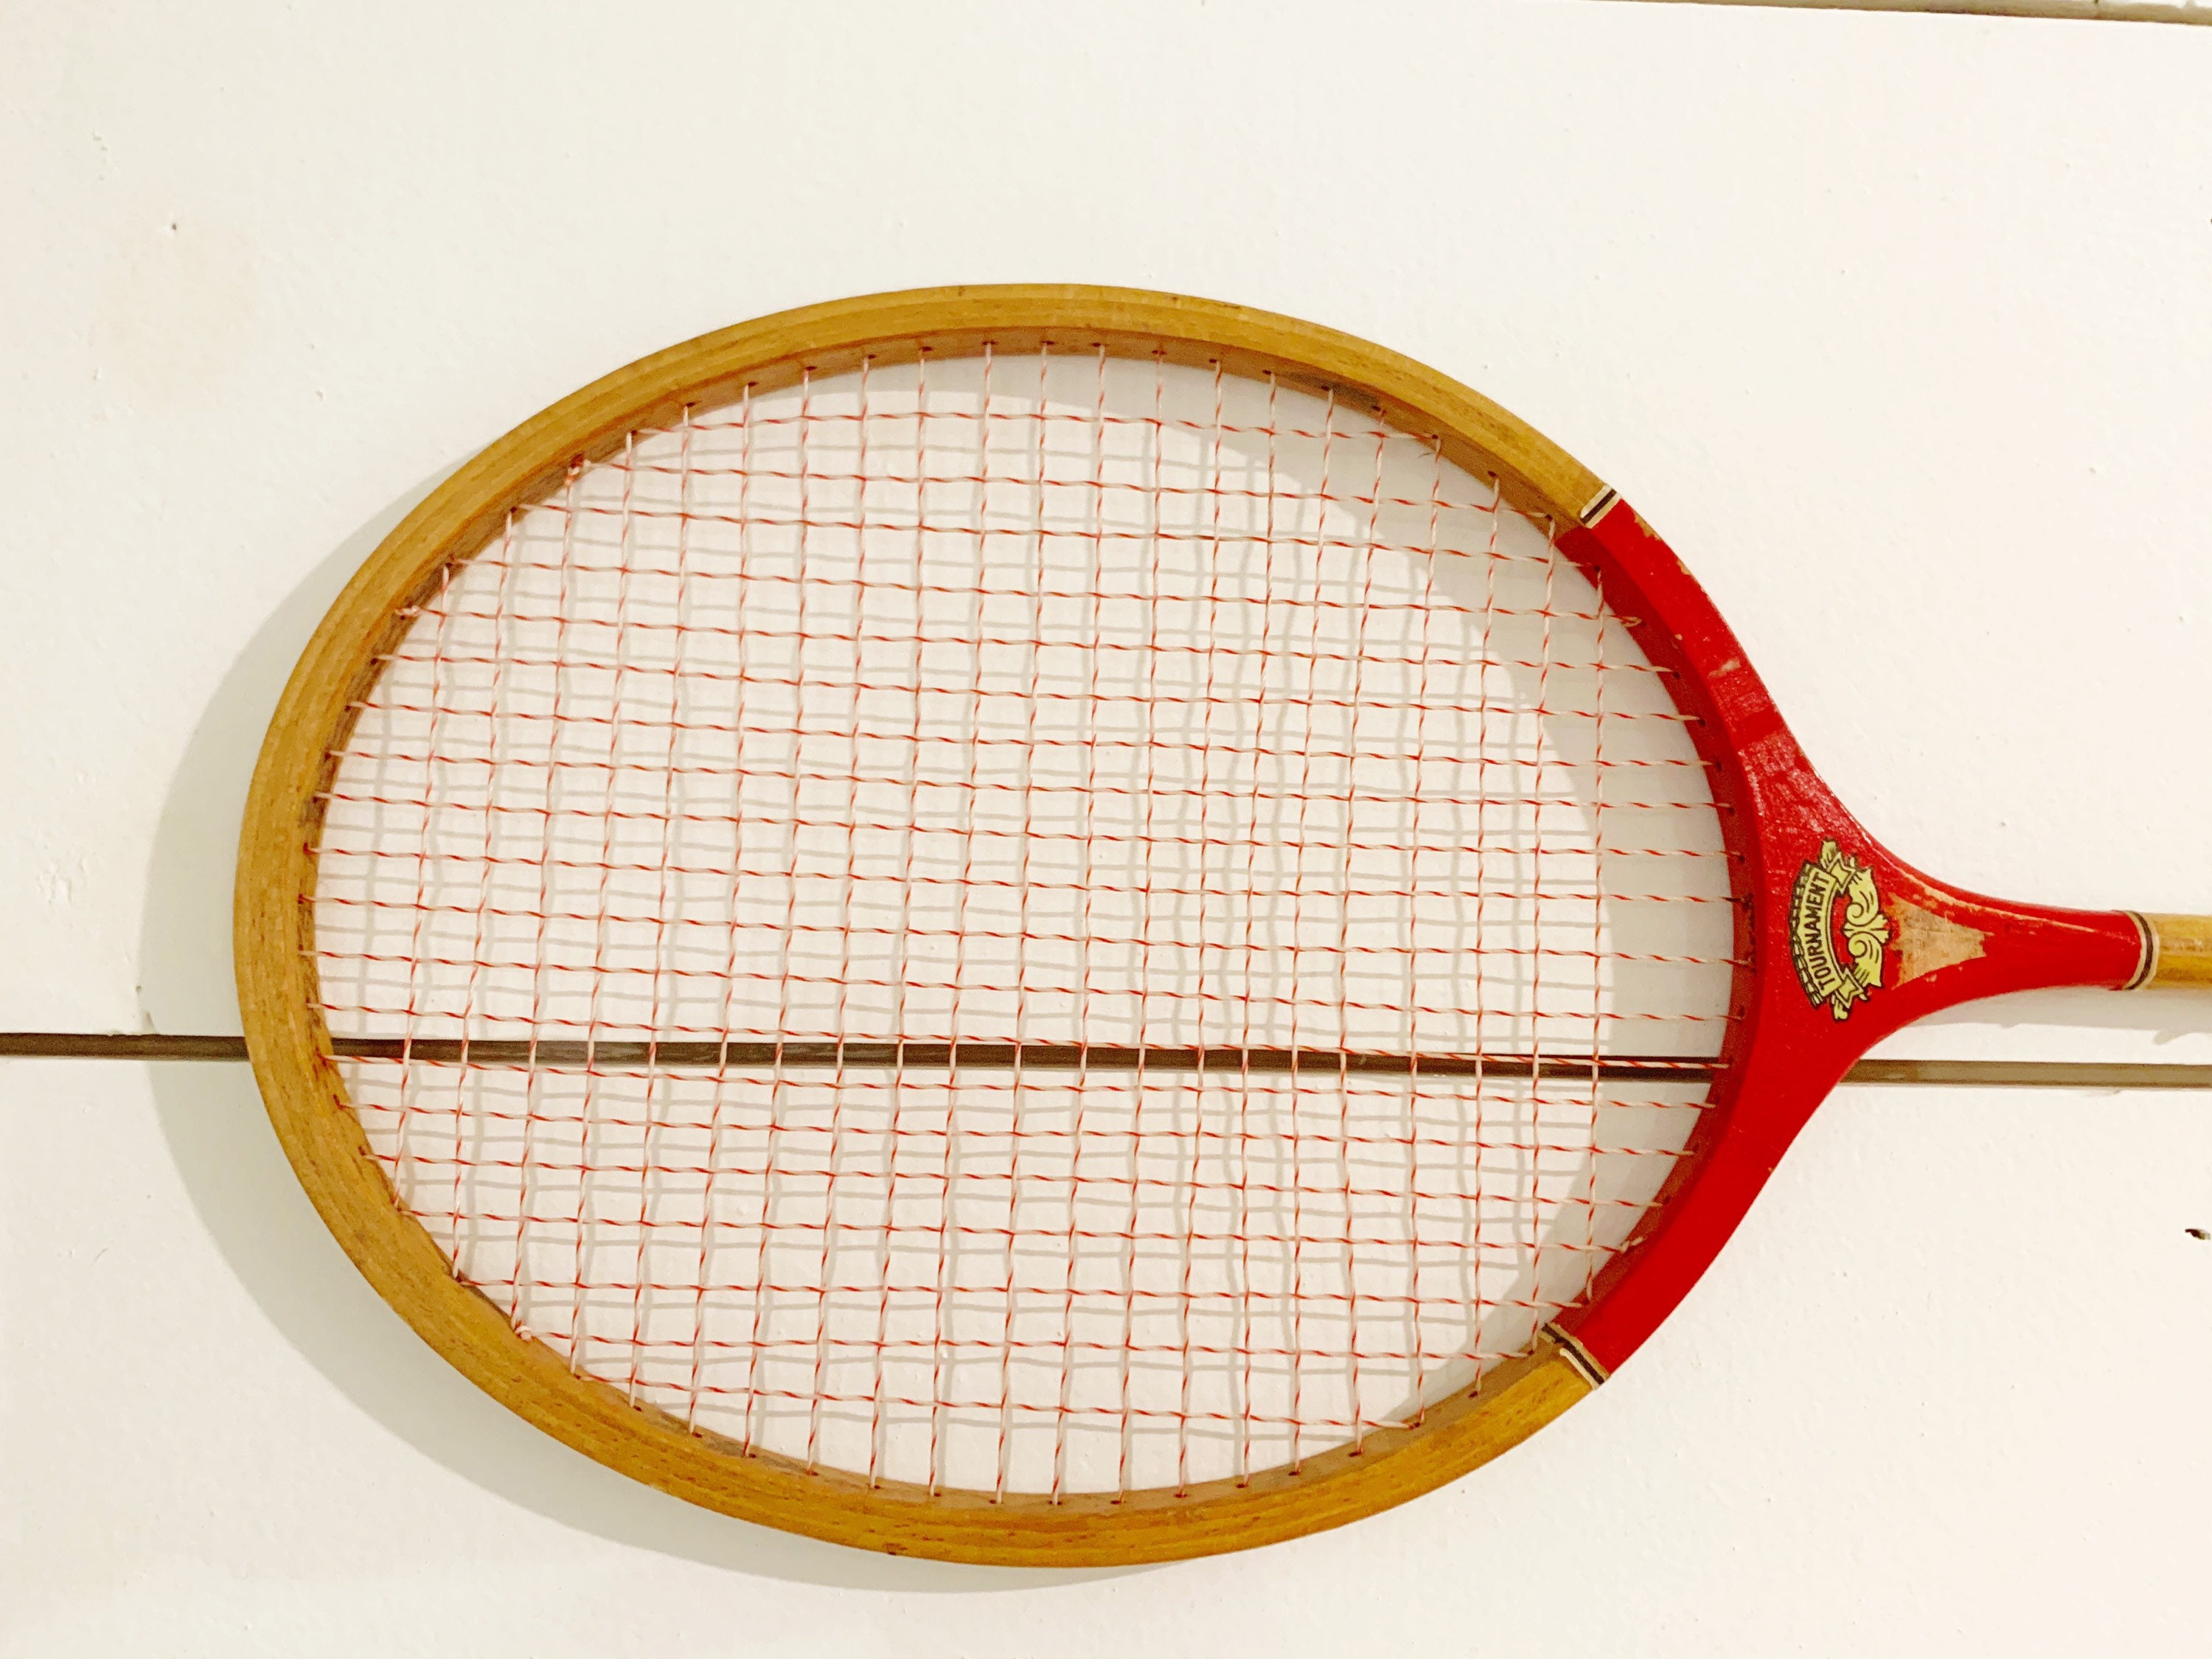 Vintage Badminton - Etsy